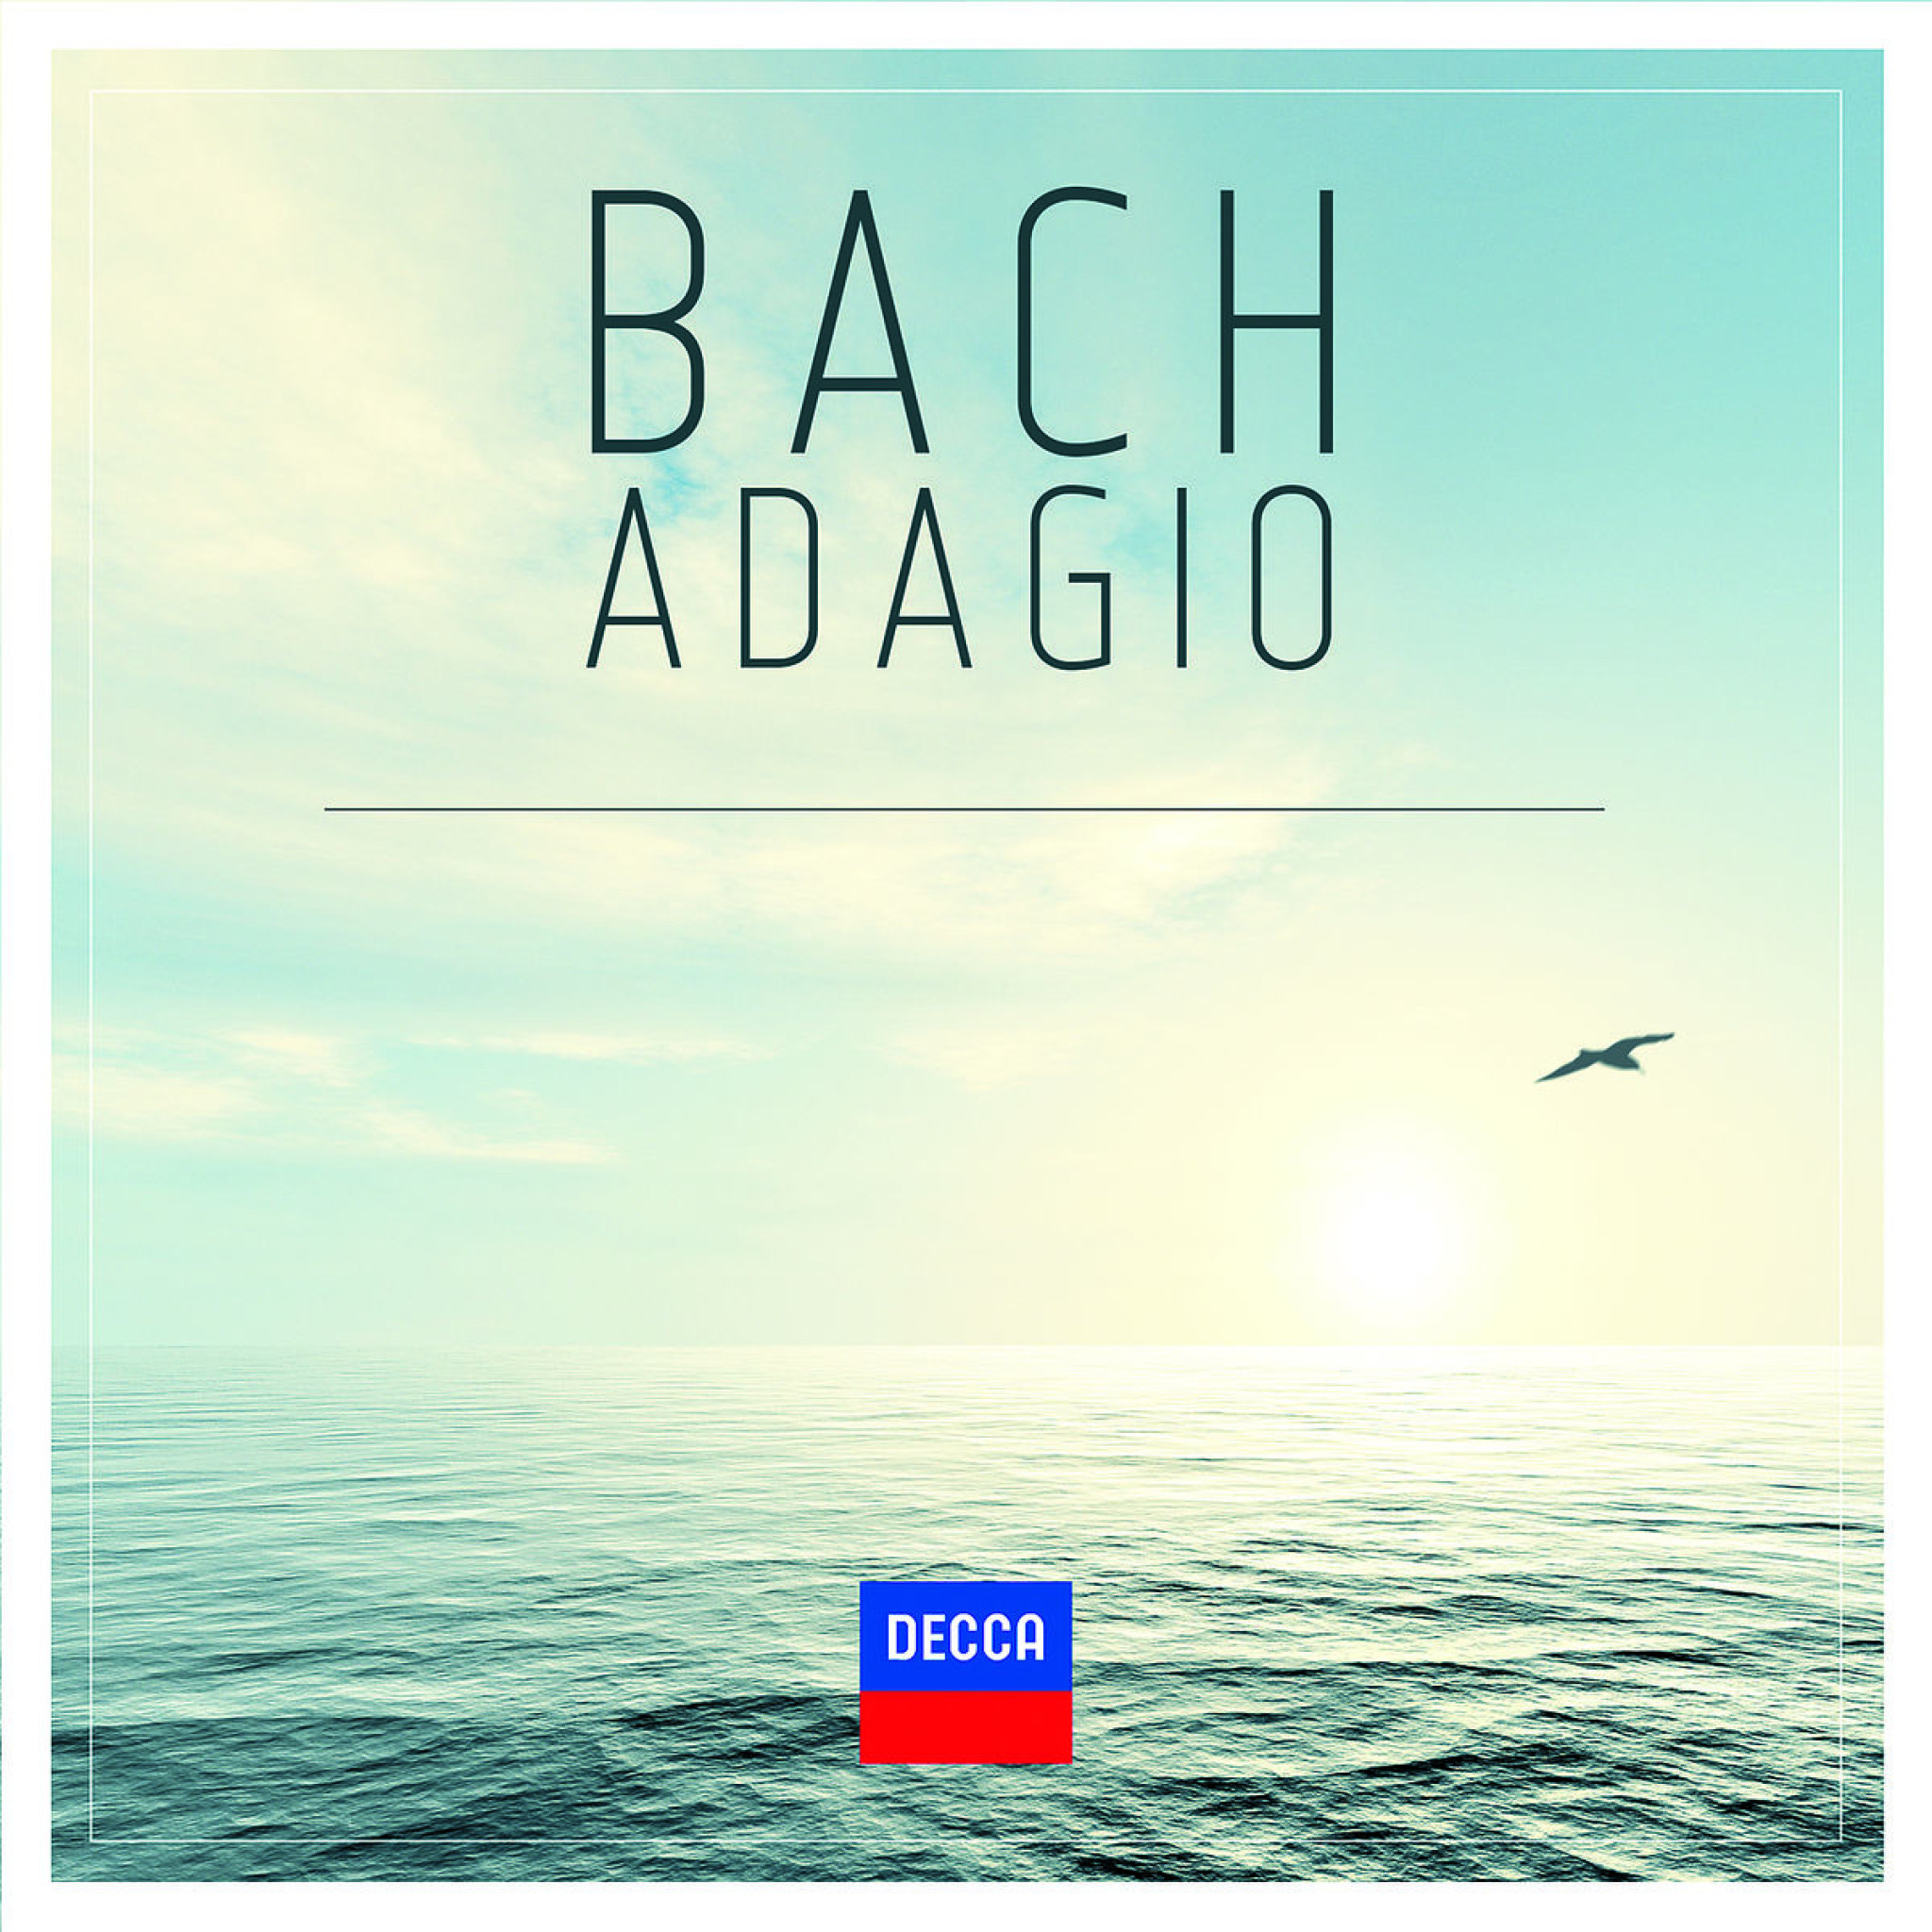 Bach Adagio